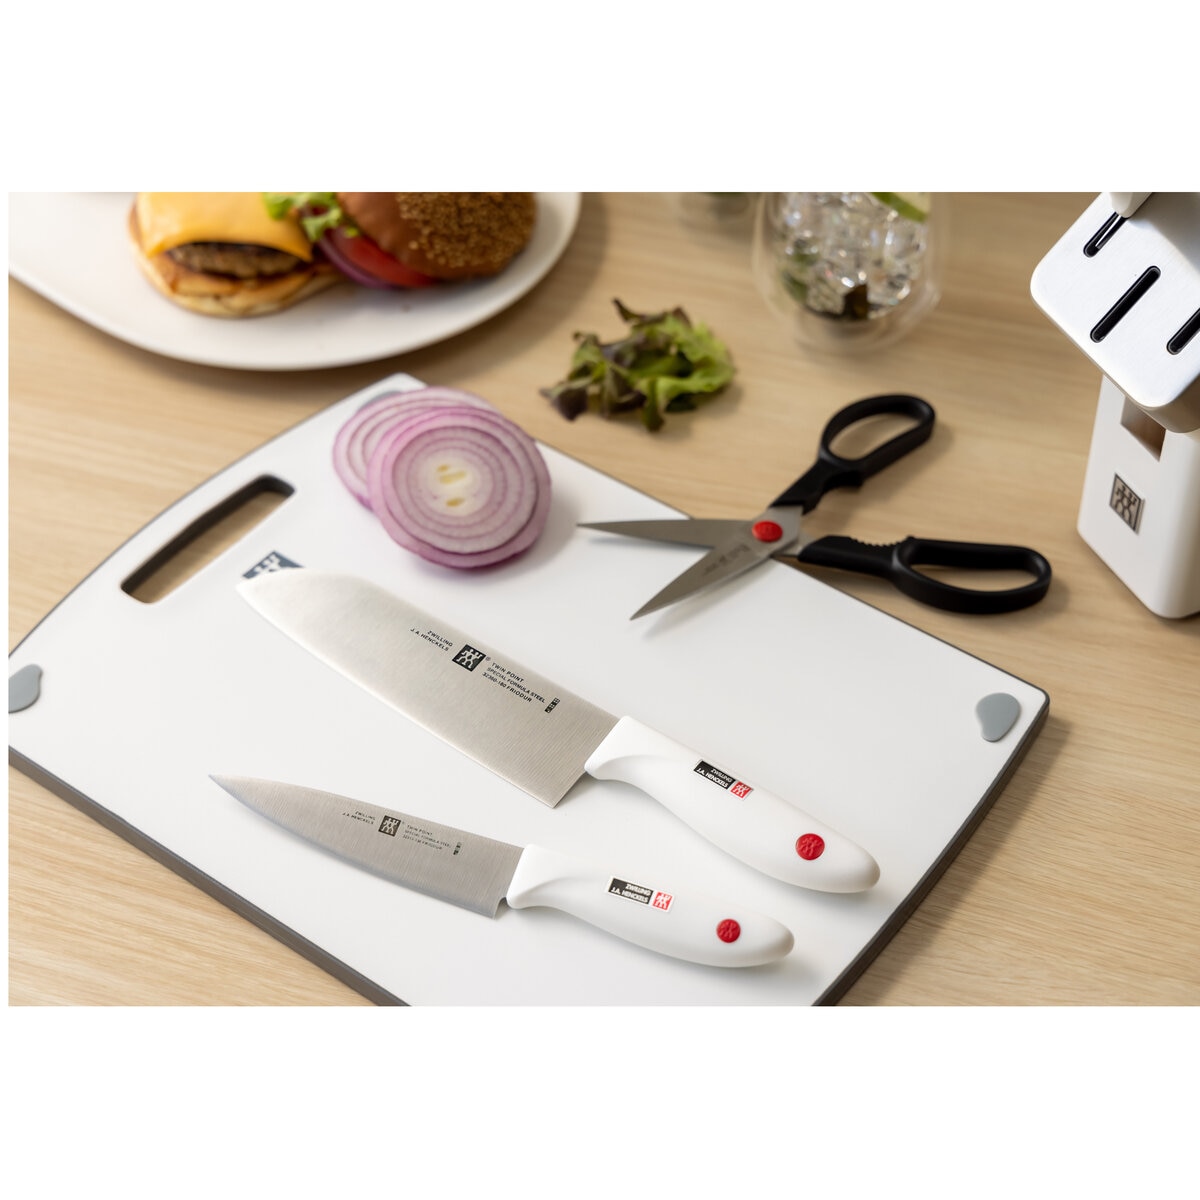 【セール】  白5セット ブロック ナイフ 【送料無料】ツヴィリング 調理器具